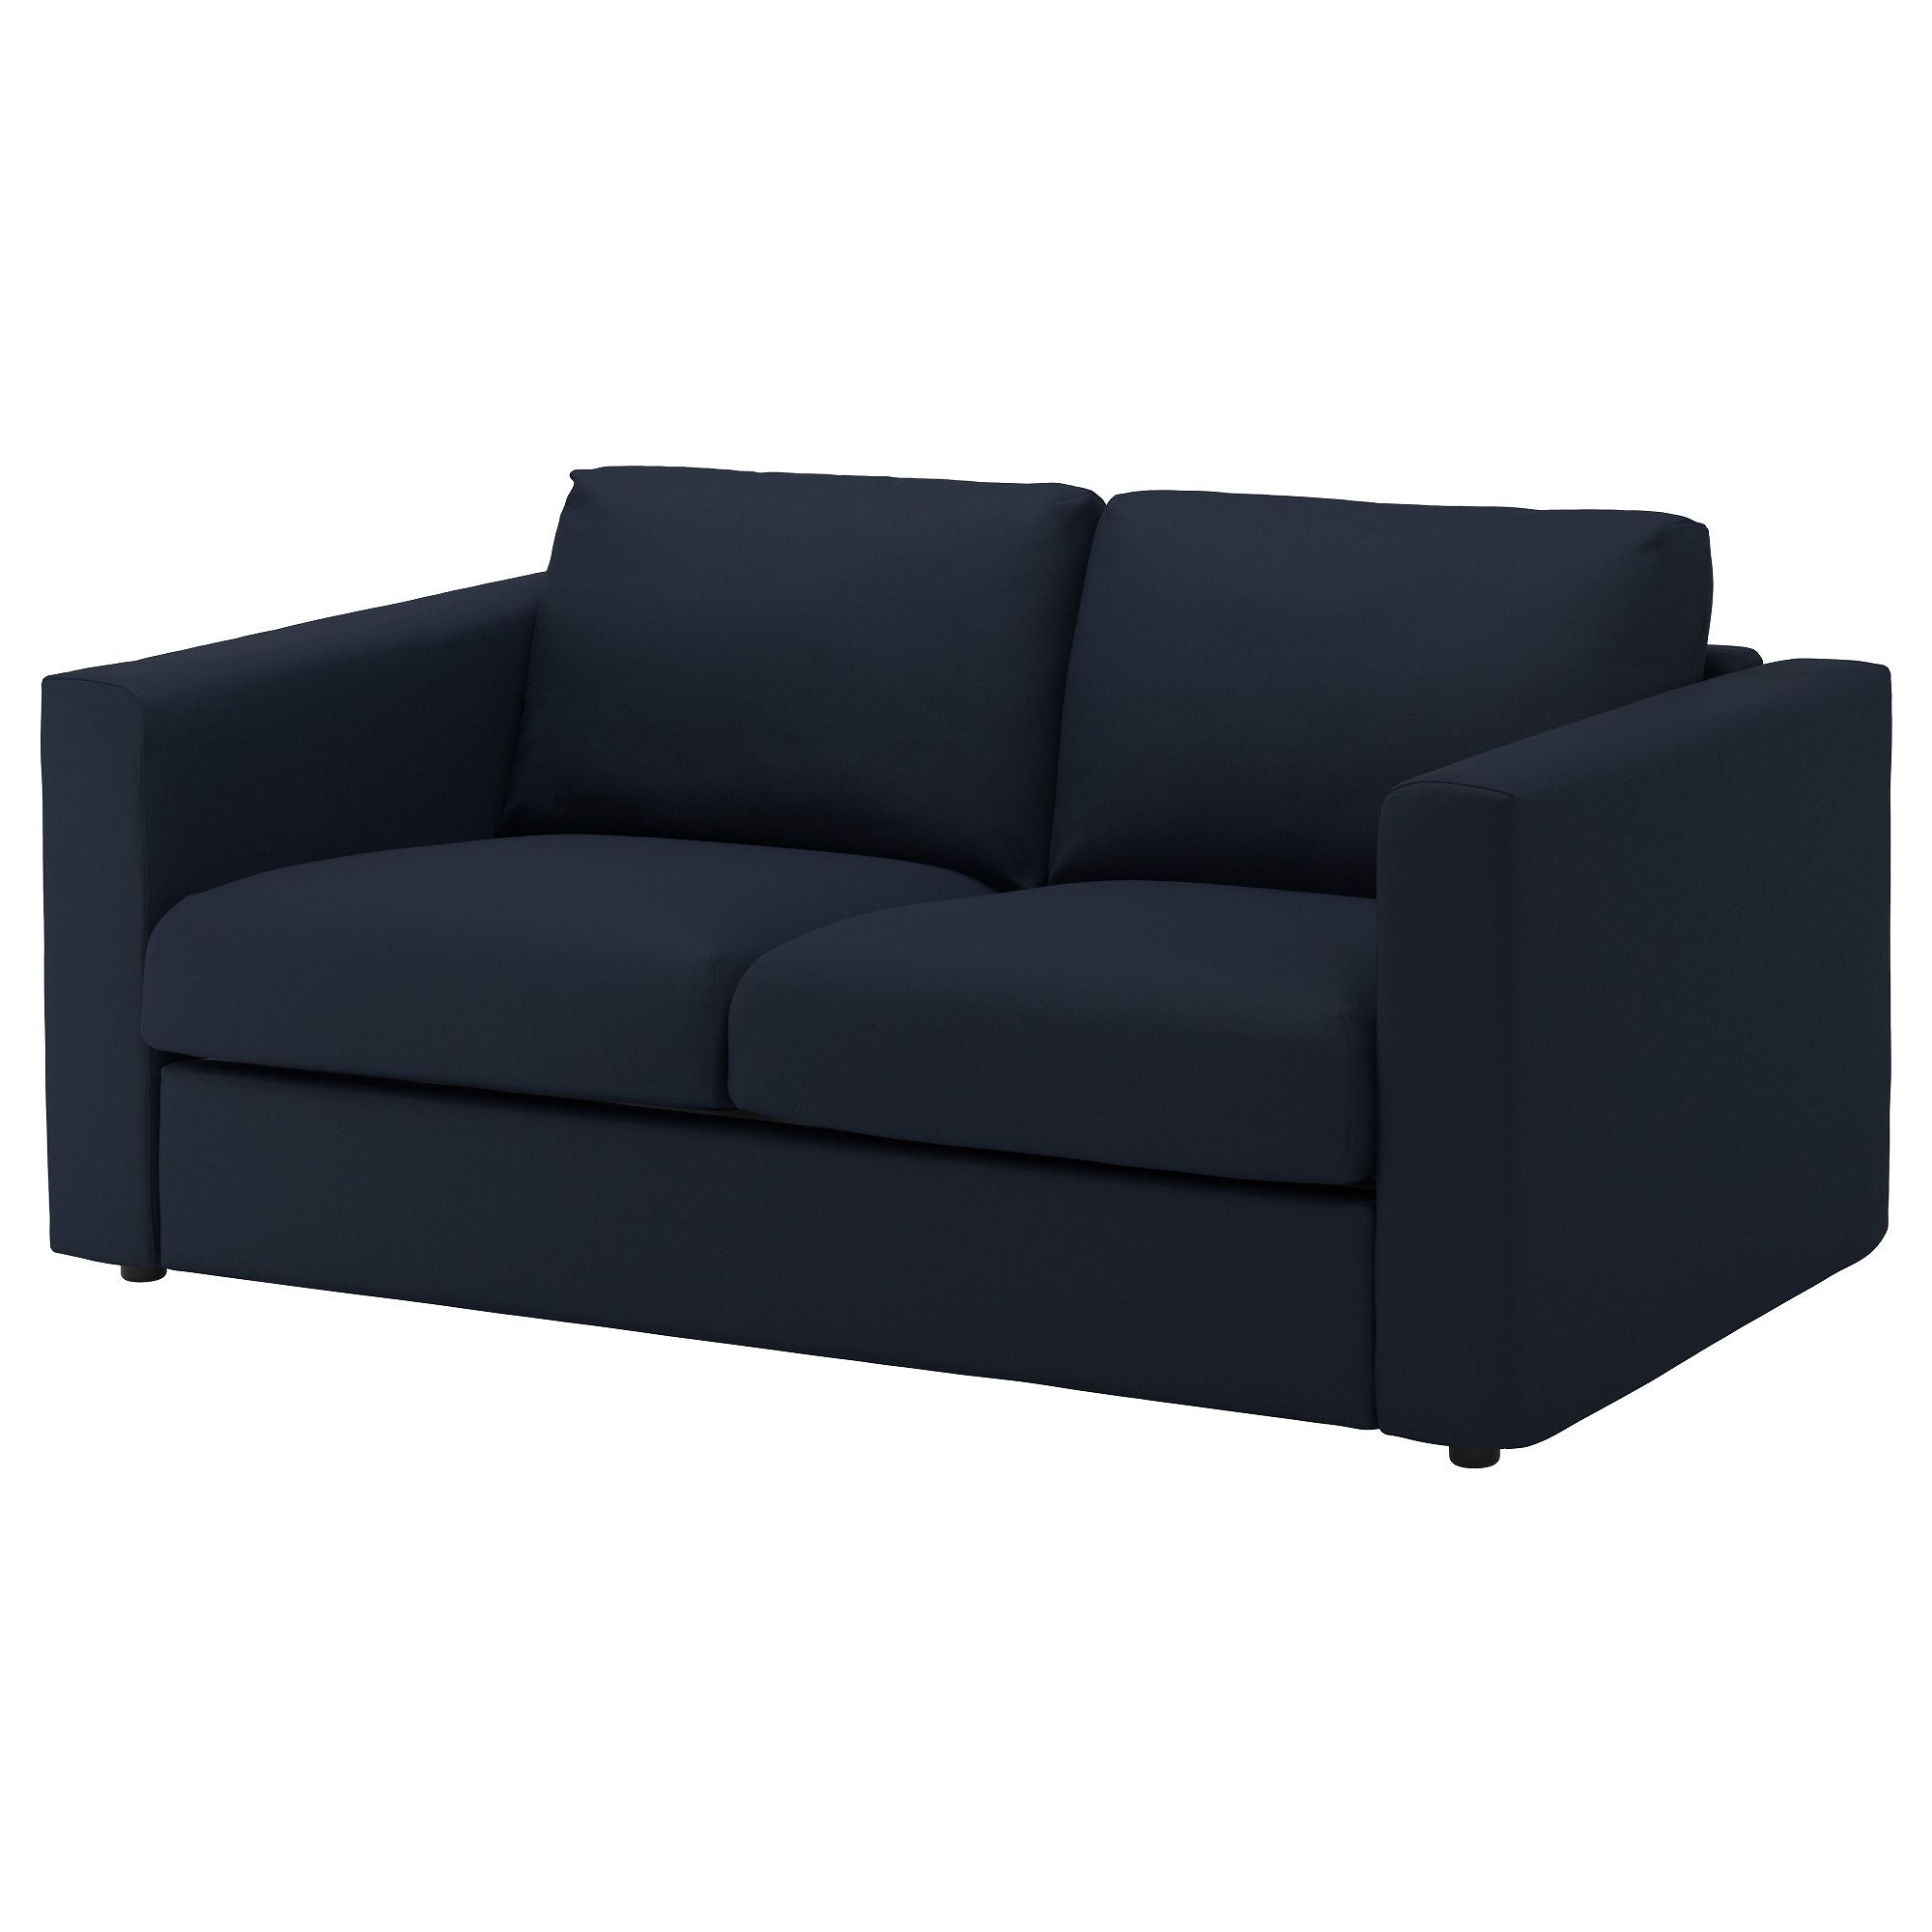 Two Seater Sofas | Ikea Ireland – Dublin Regarding Ikea Small Sofas (Photo 1 of 10)